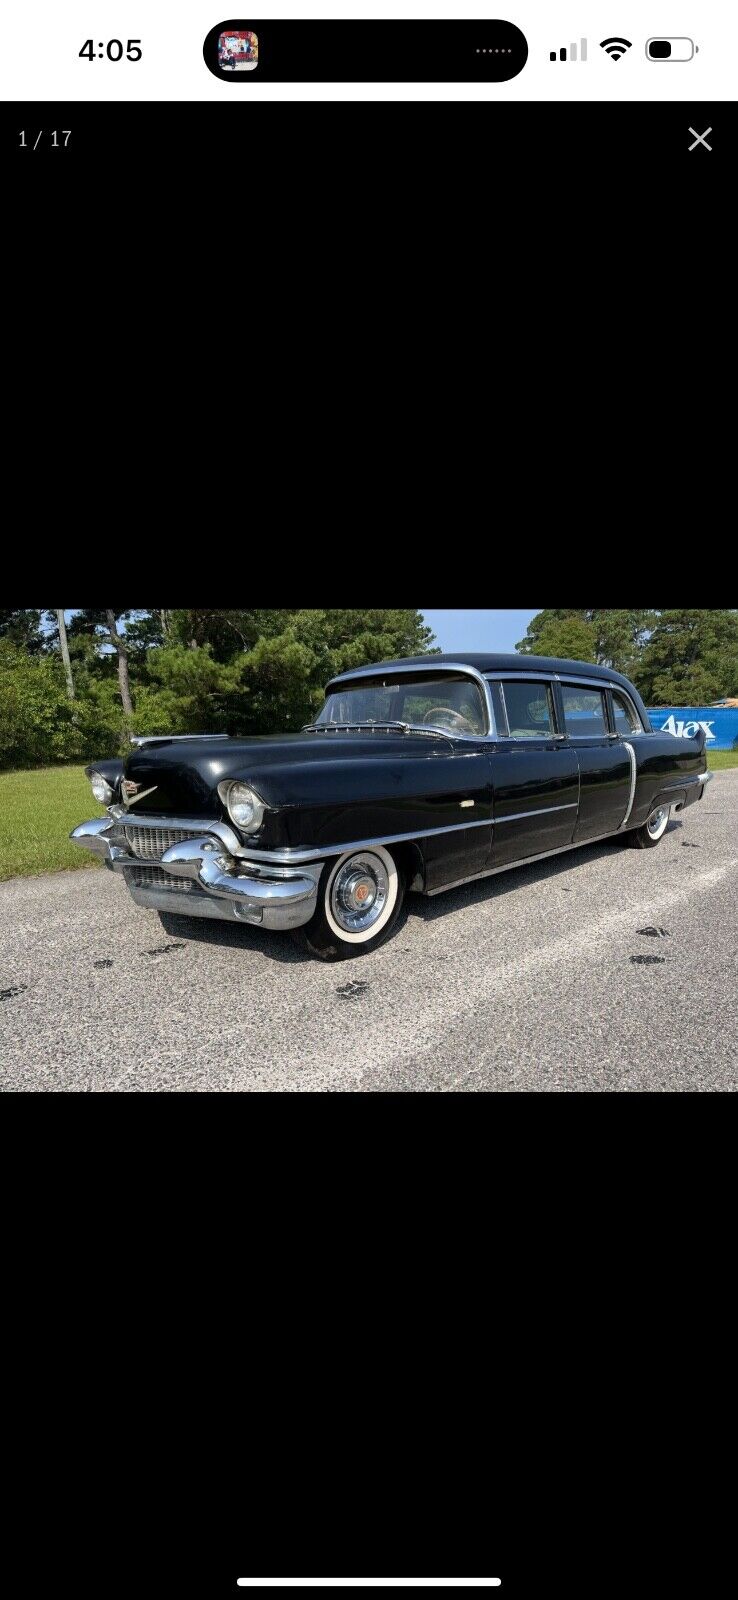 Cadillac Fleetwood Limousine 1956 à vendre